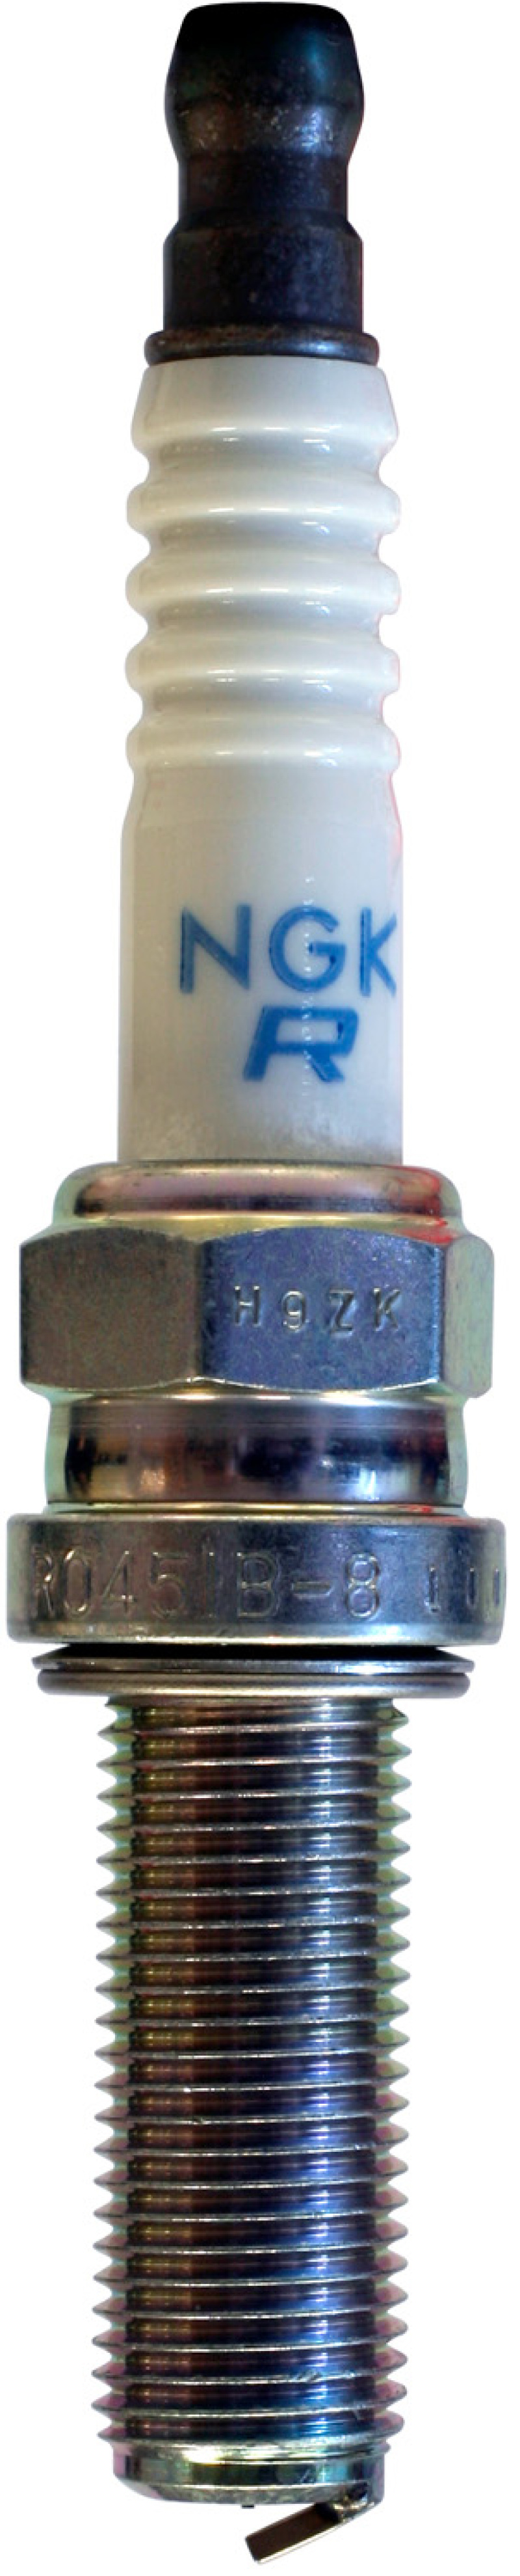 NGK Racing Spark Plug Box of 4 (R0451B-8) - 9356